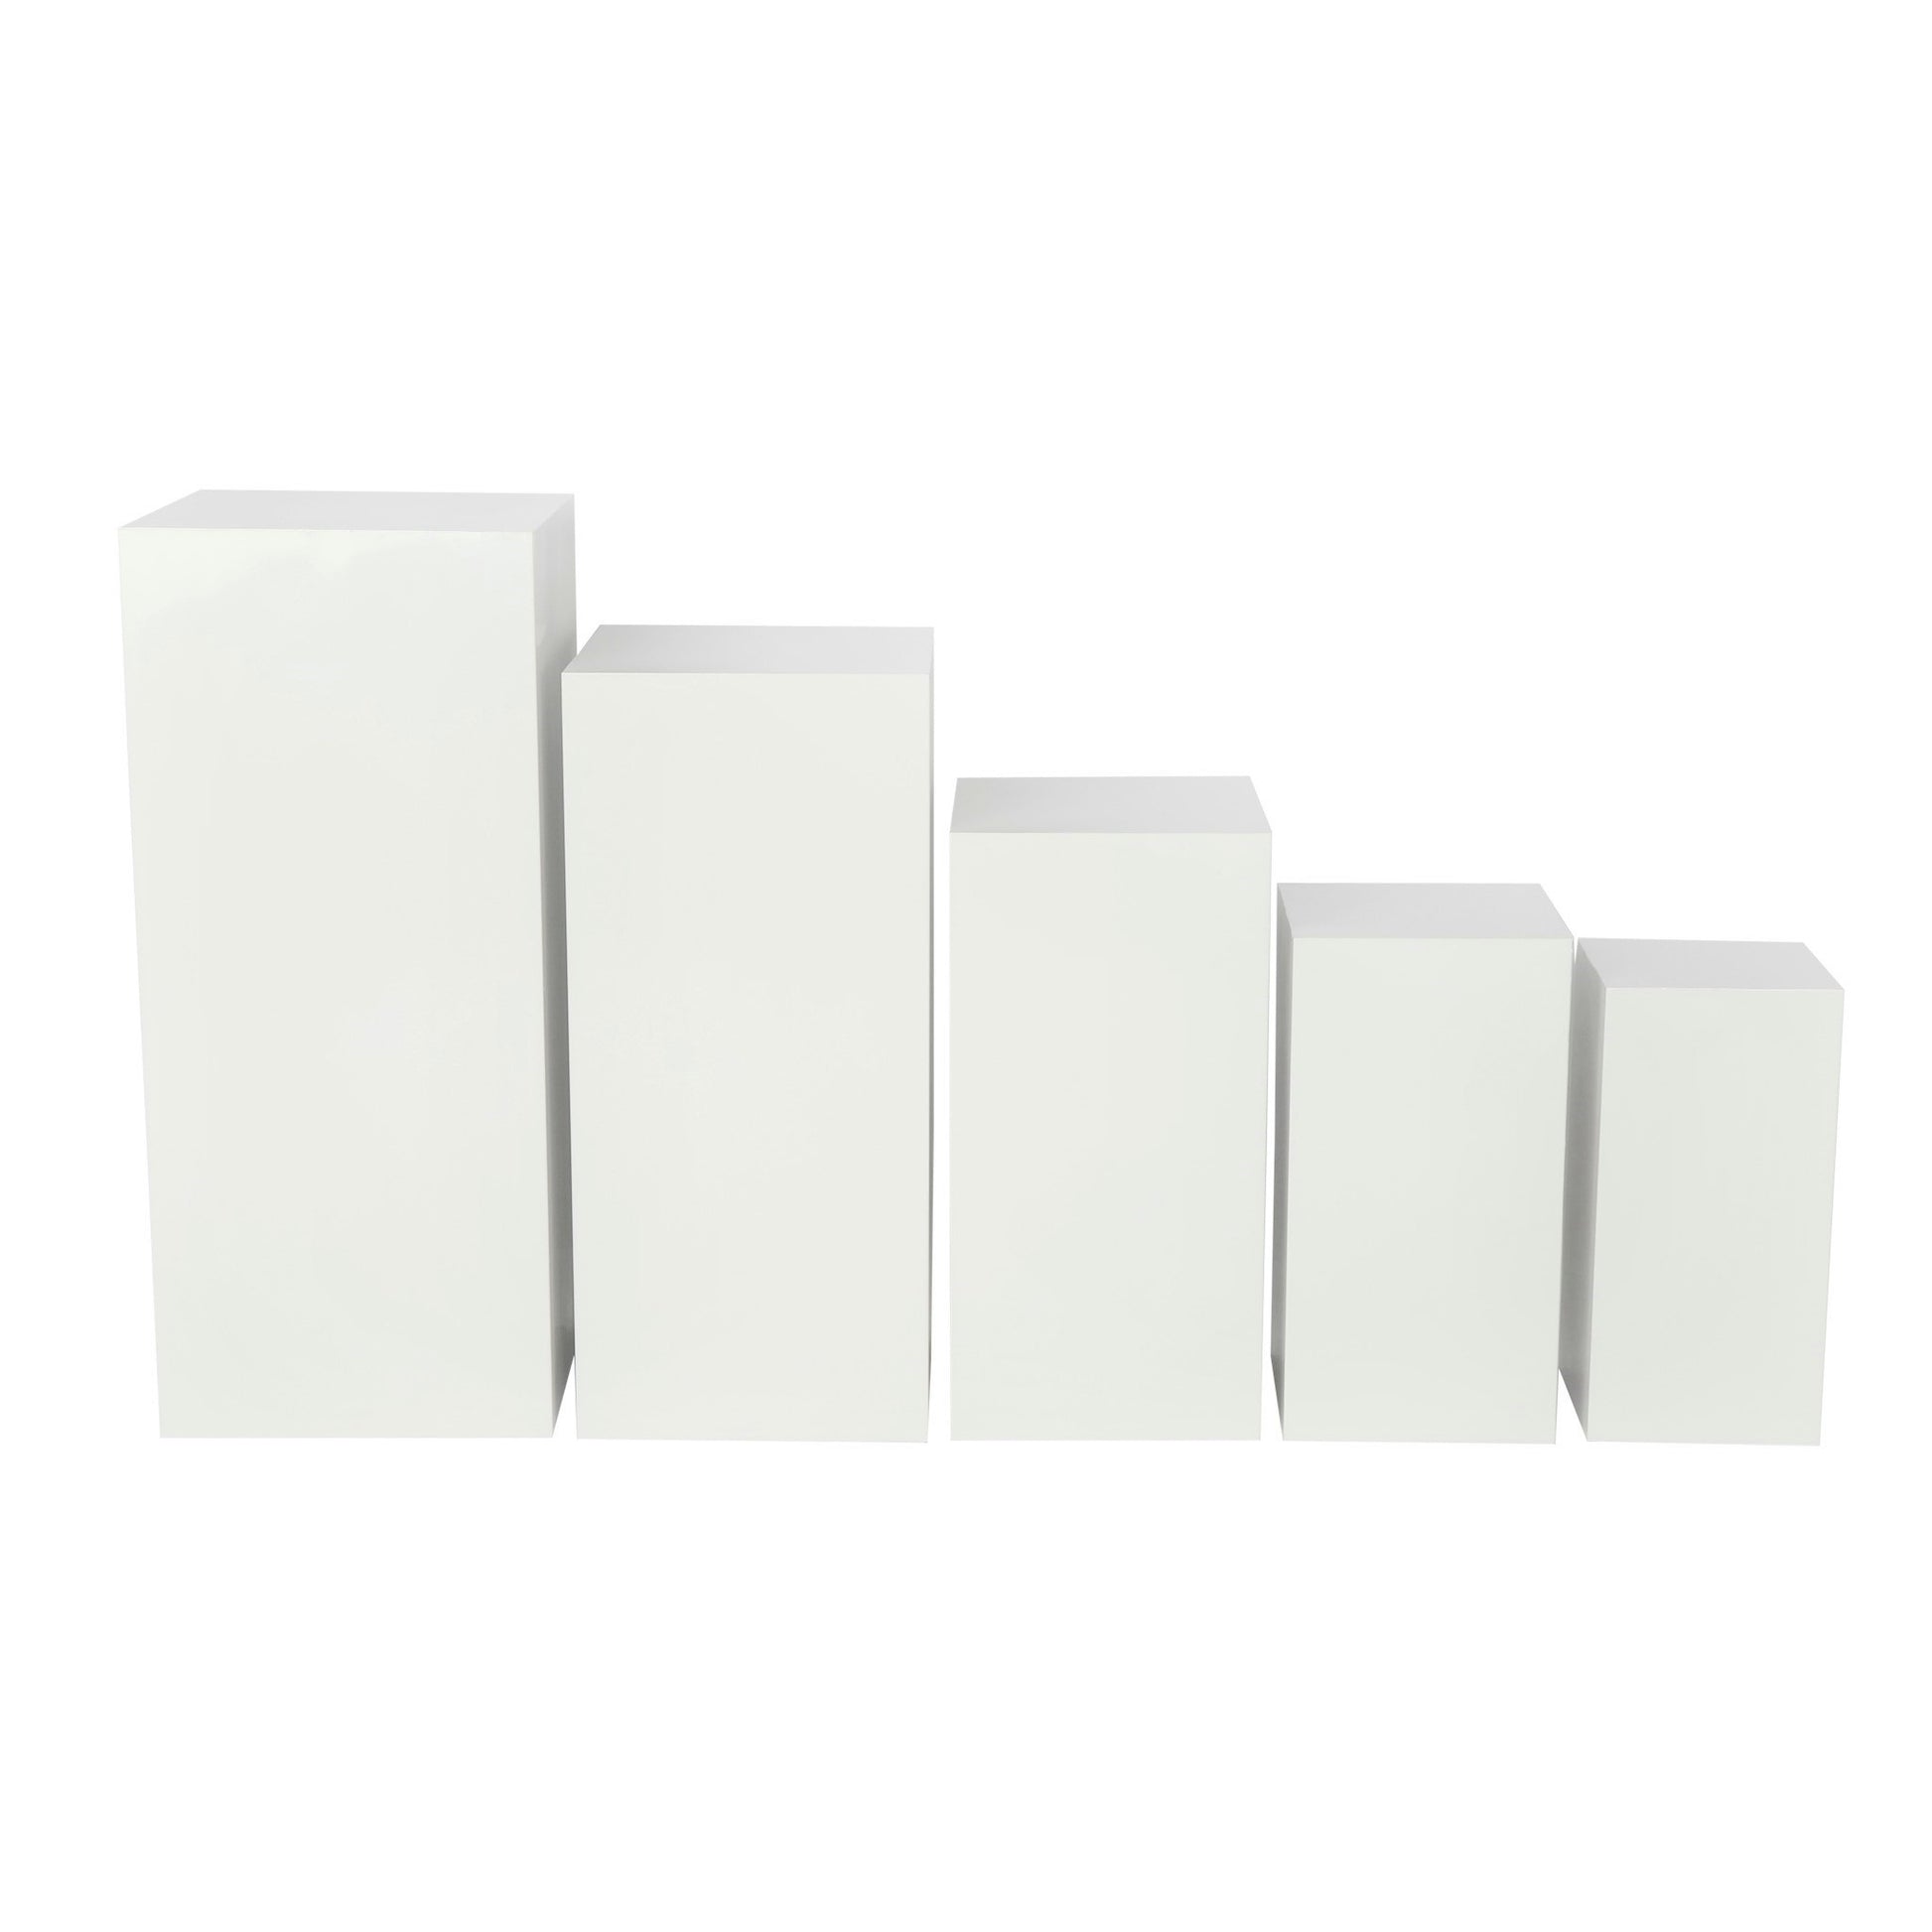 Foam Block Stand-Off Cube - White - 1 x 1 x 1 inch